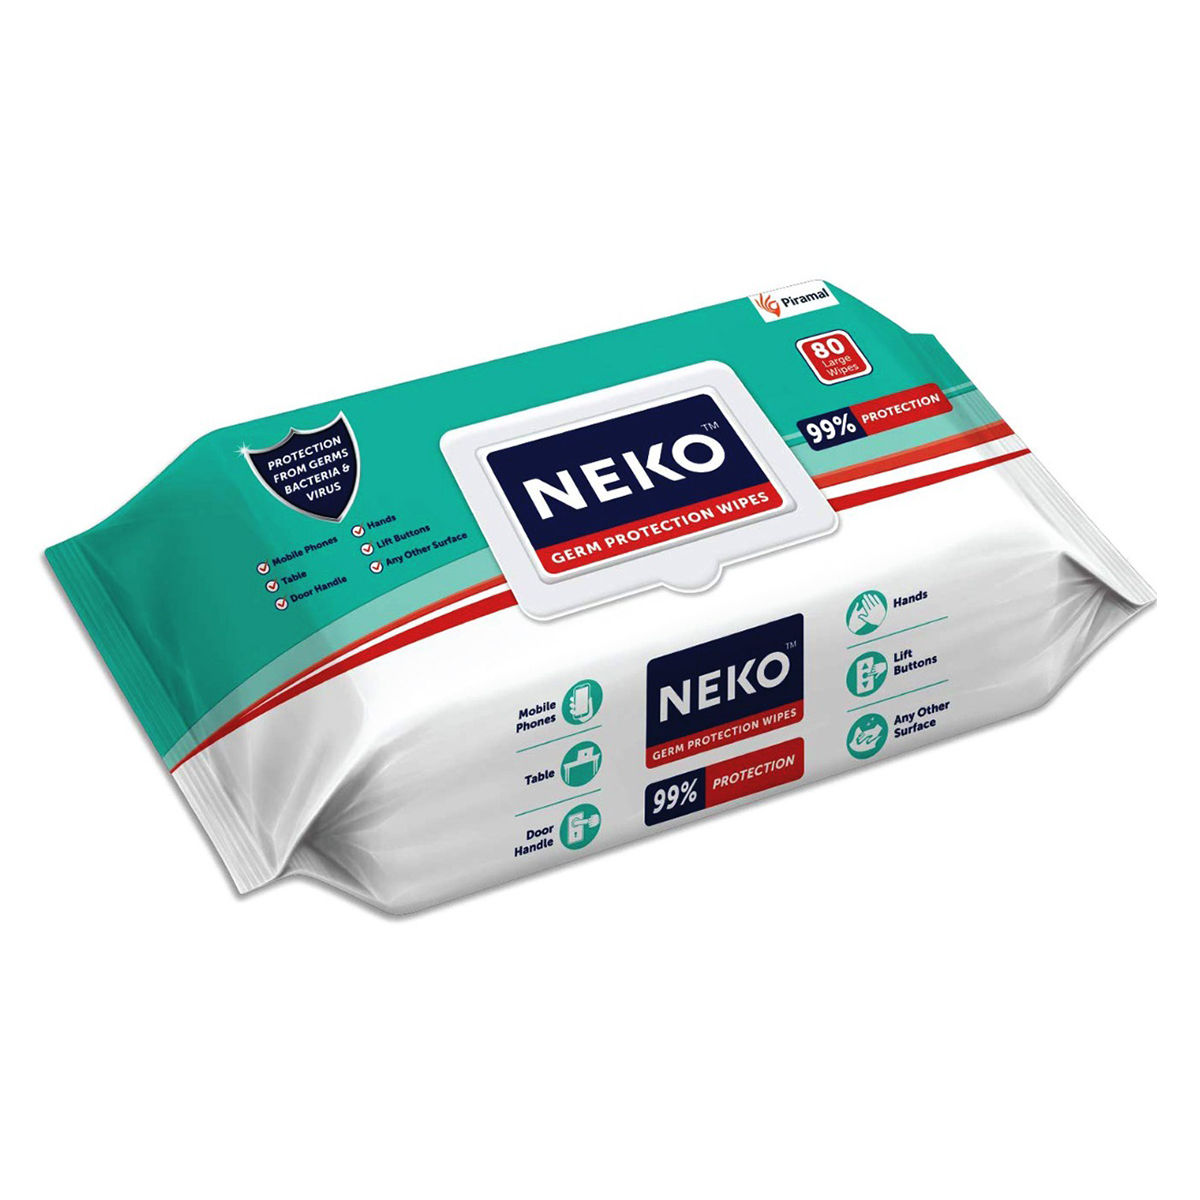 Buy Neko Germ Protection Wipes, 80 Count Online